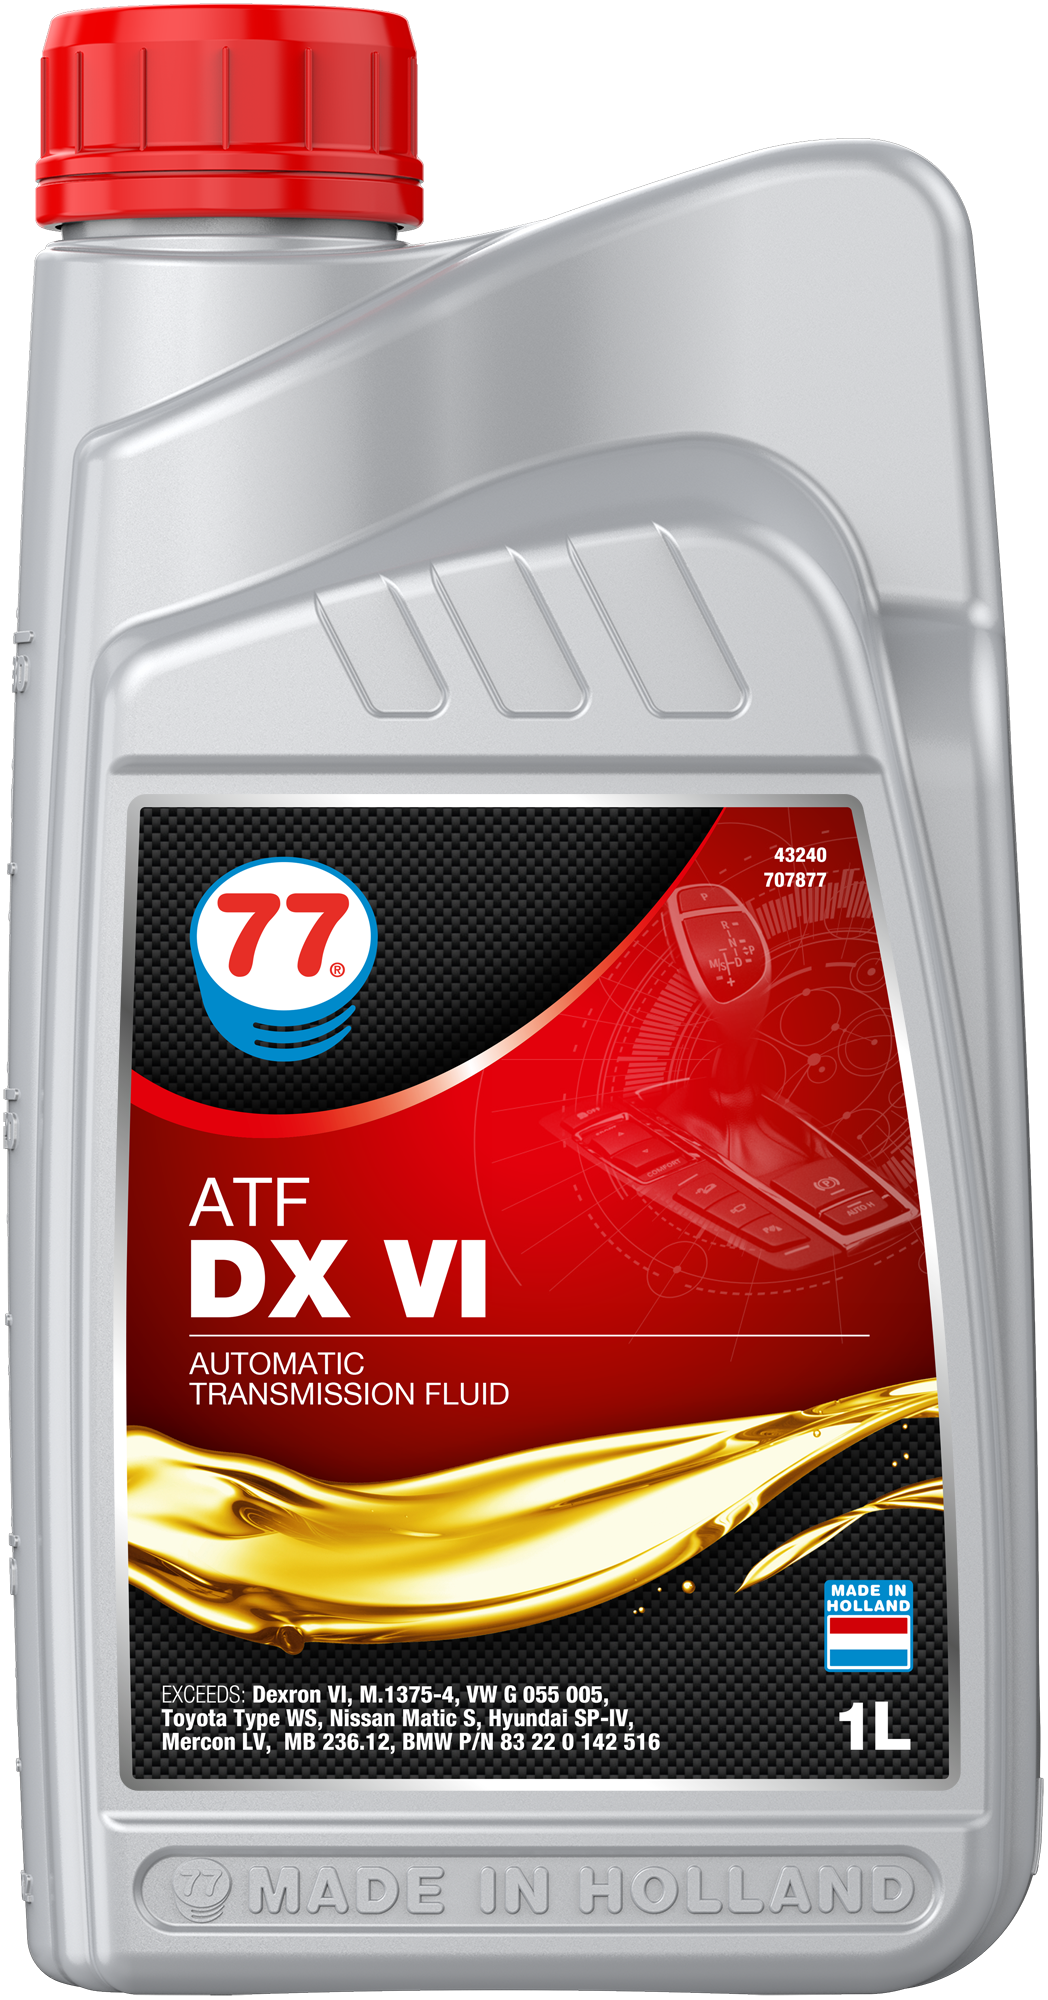 4324-1 ATF DX VI is een hoogwaardige universele vloeistof op basis van 100% synthetische basisolie die kunnen worden gebruikt in automatische transmissie, koppelommachines en powersteering van personenauto's, lichte bestelwagens en bedrijfsvoertuigen waar een GM Dexron VI-specificatie vereist is.